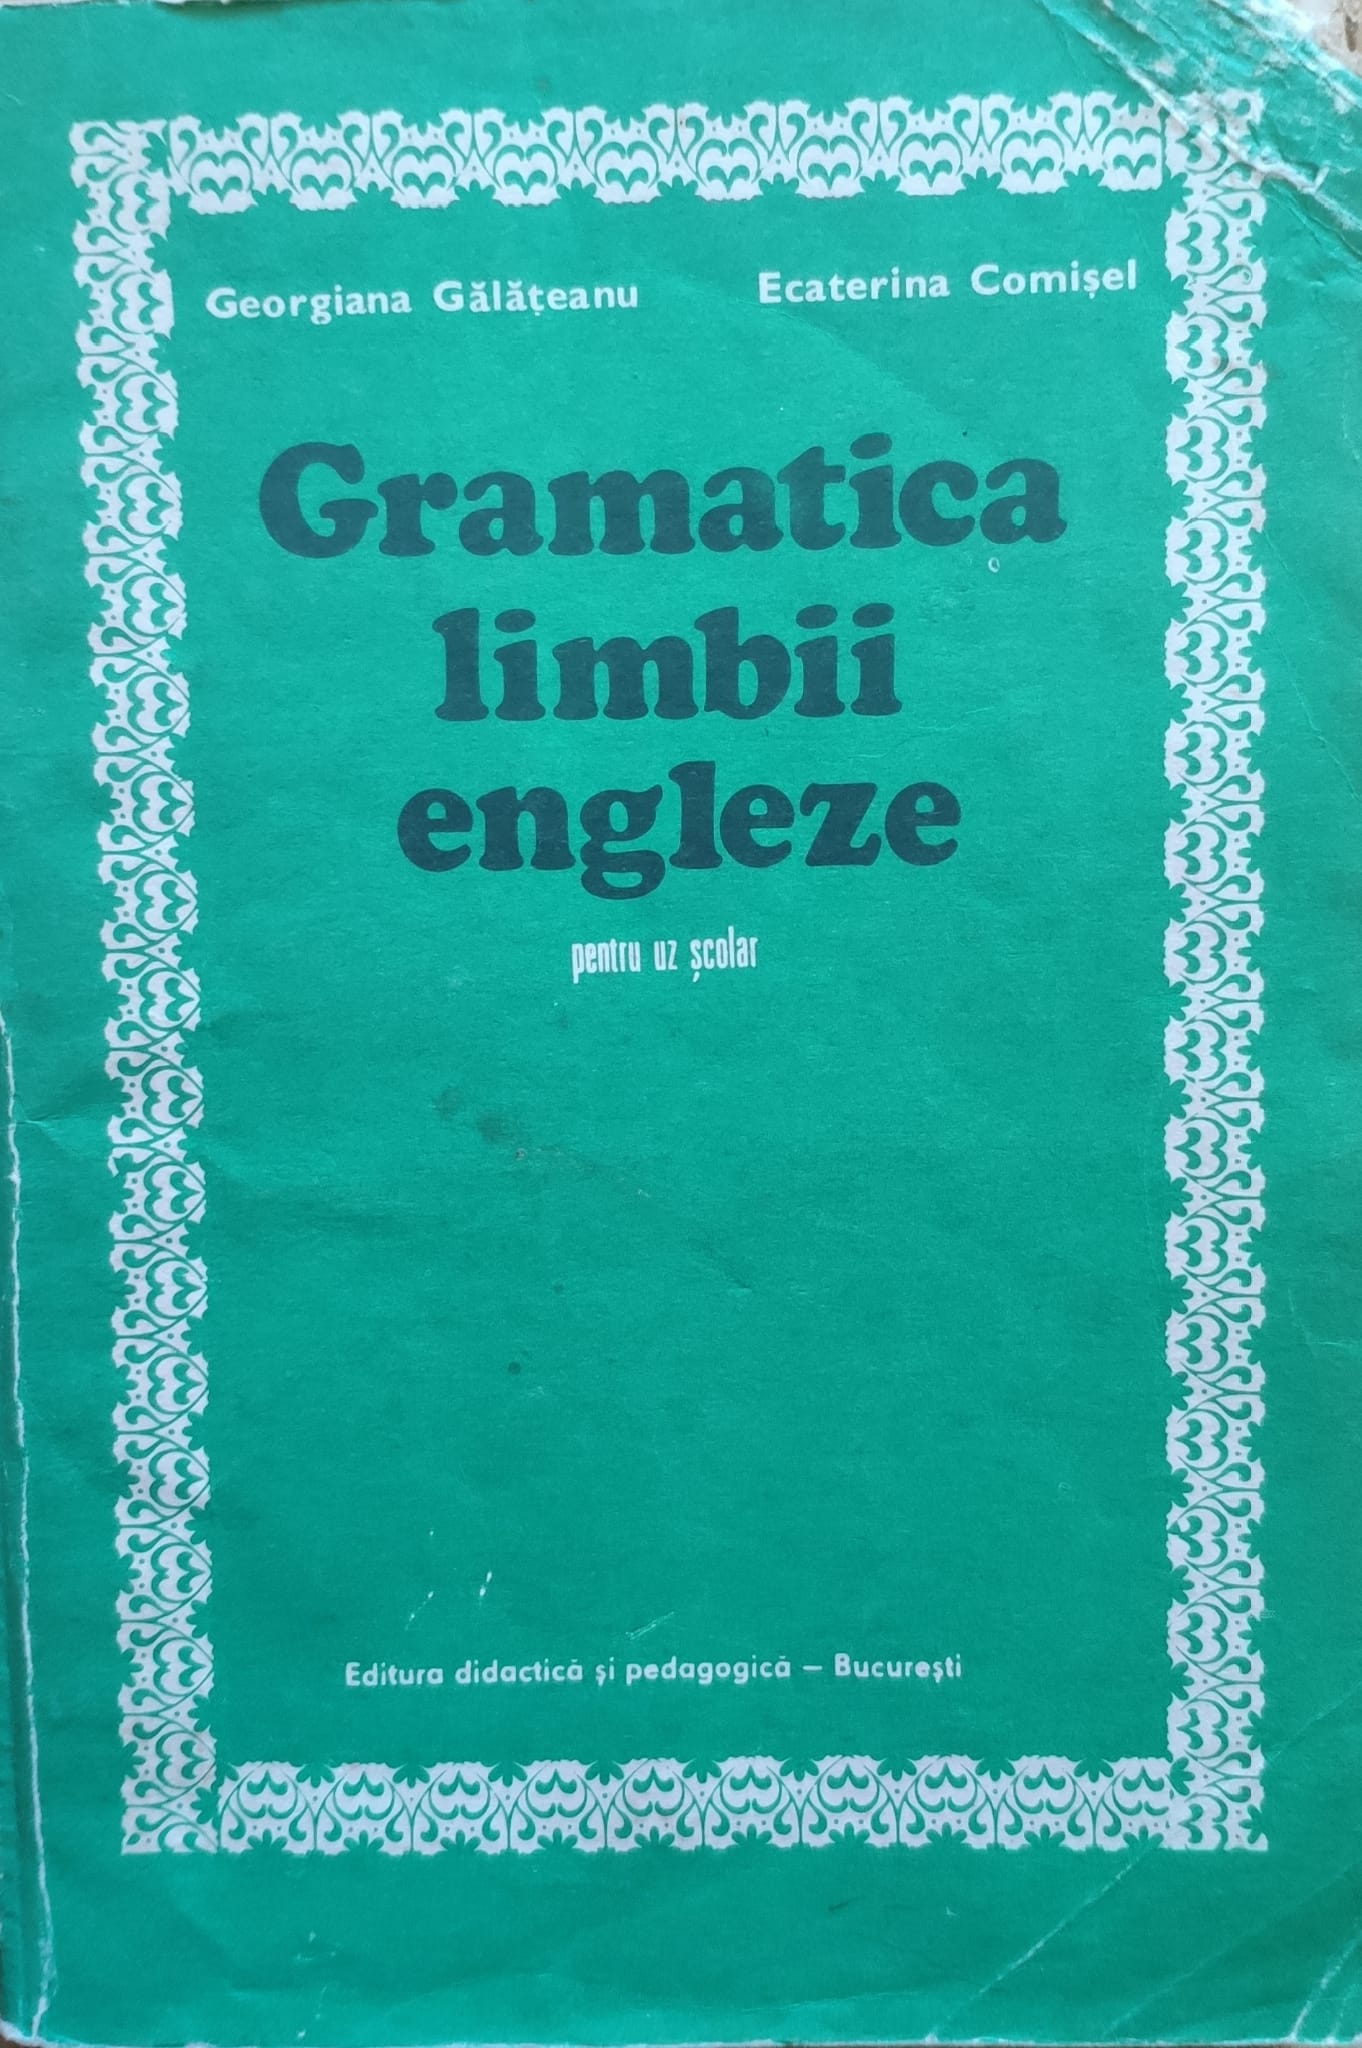 gramatica limbii engleze pentru uz scolar                                                            georgiana galateanu ecaterina comisel                                                               